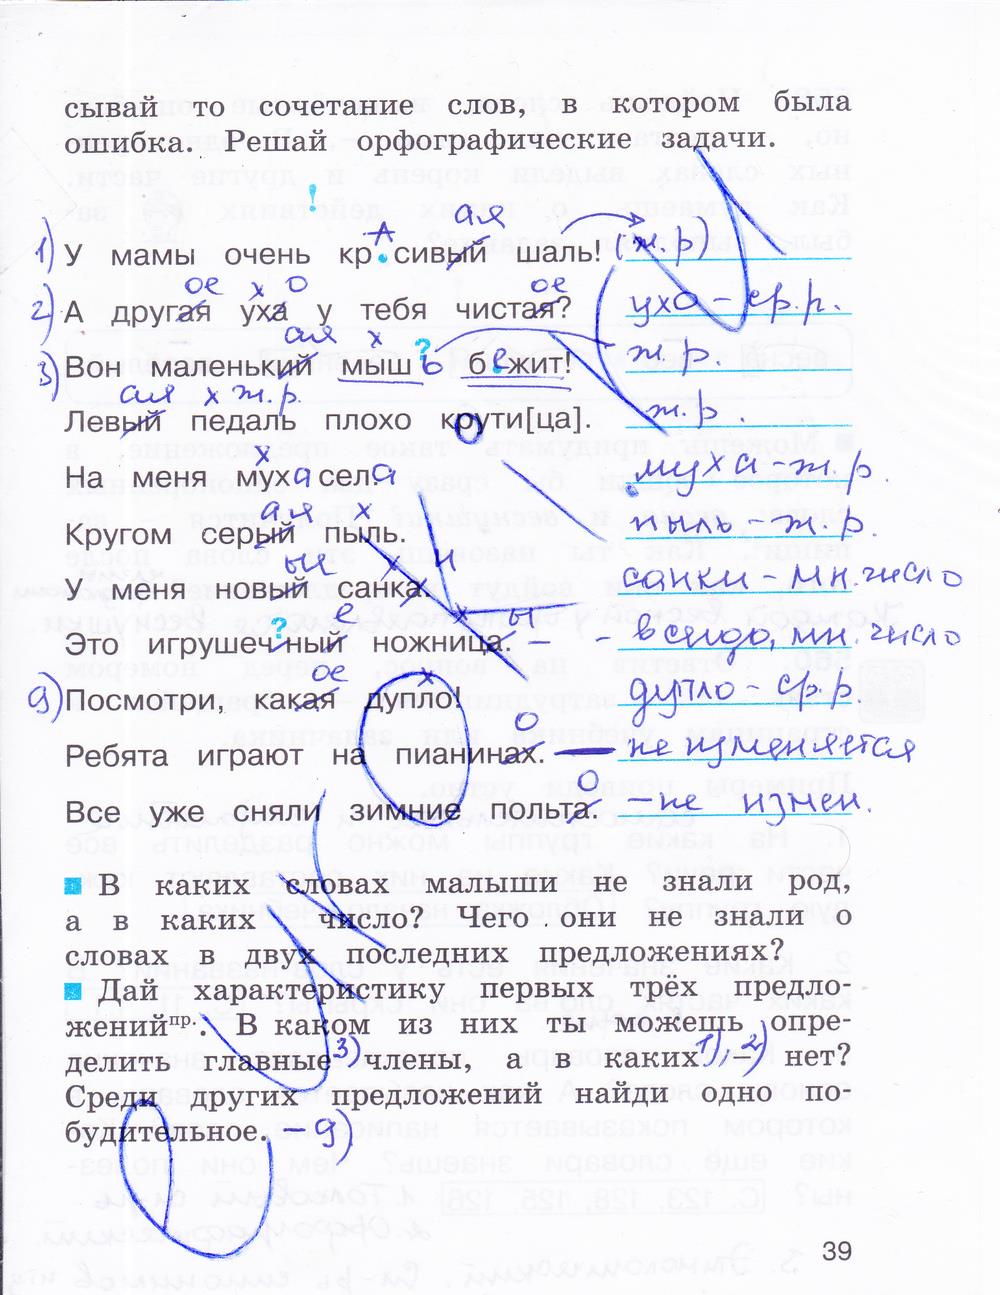 гдз 3 класс рабочая тетрадь часть 3 страница 39 русский язык Соловейчик, Кузьменко